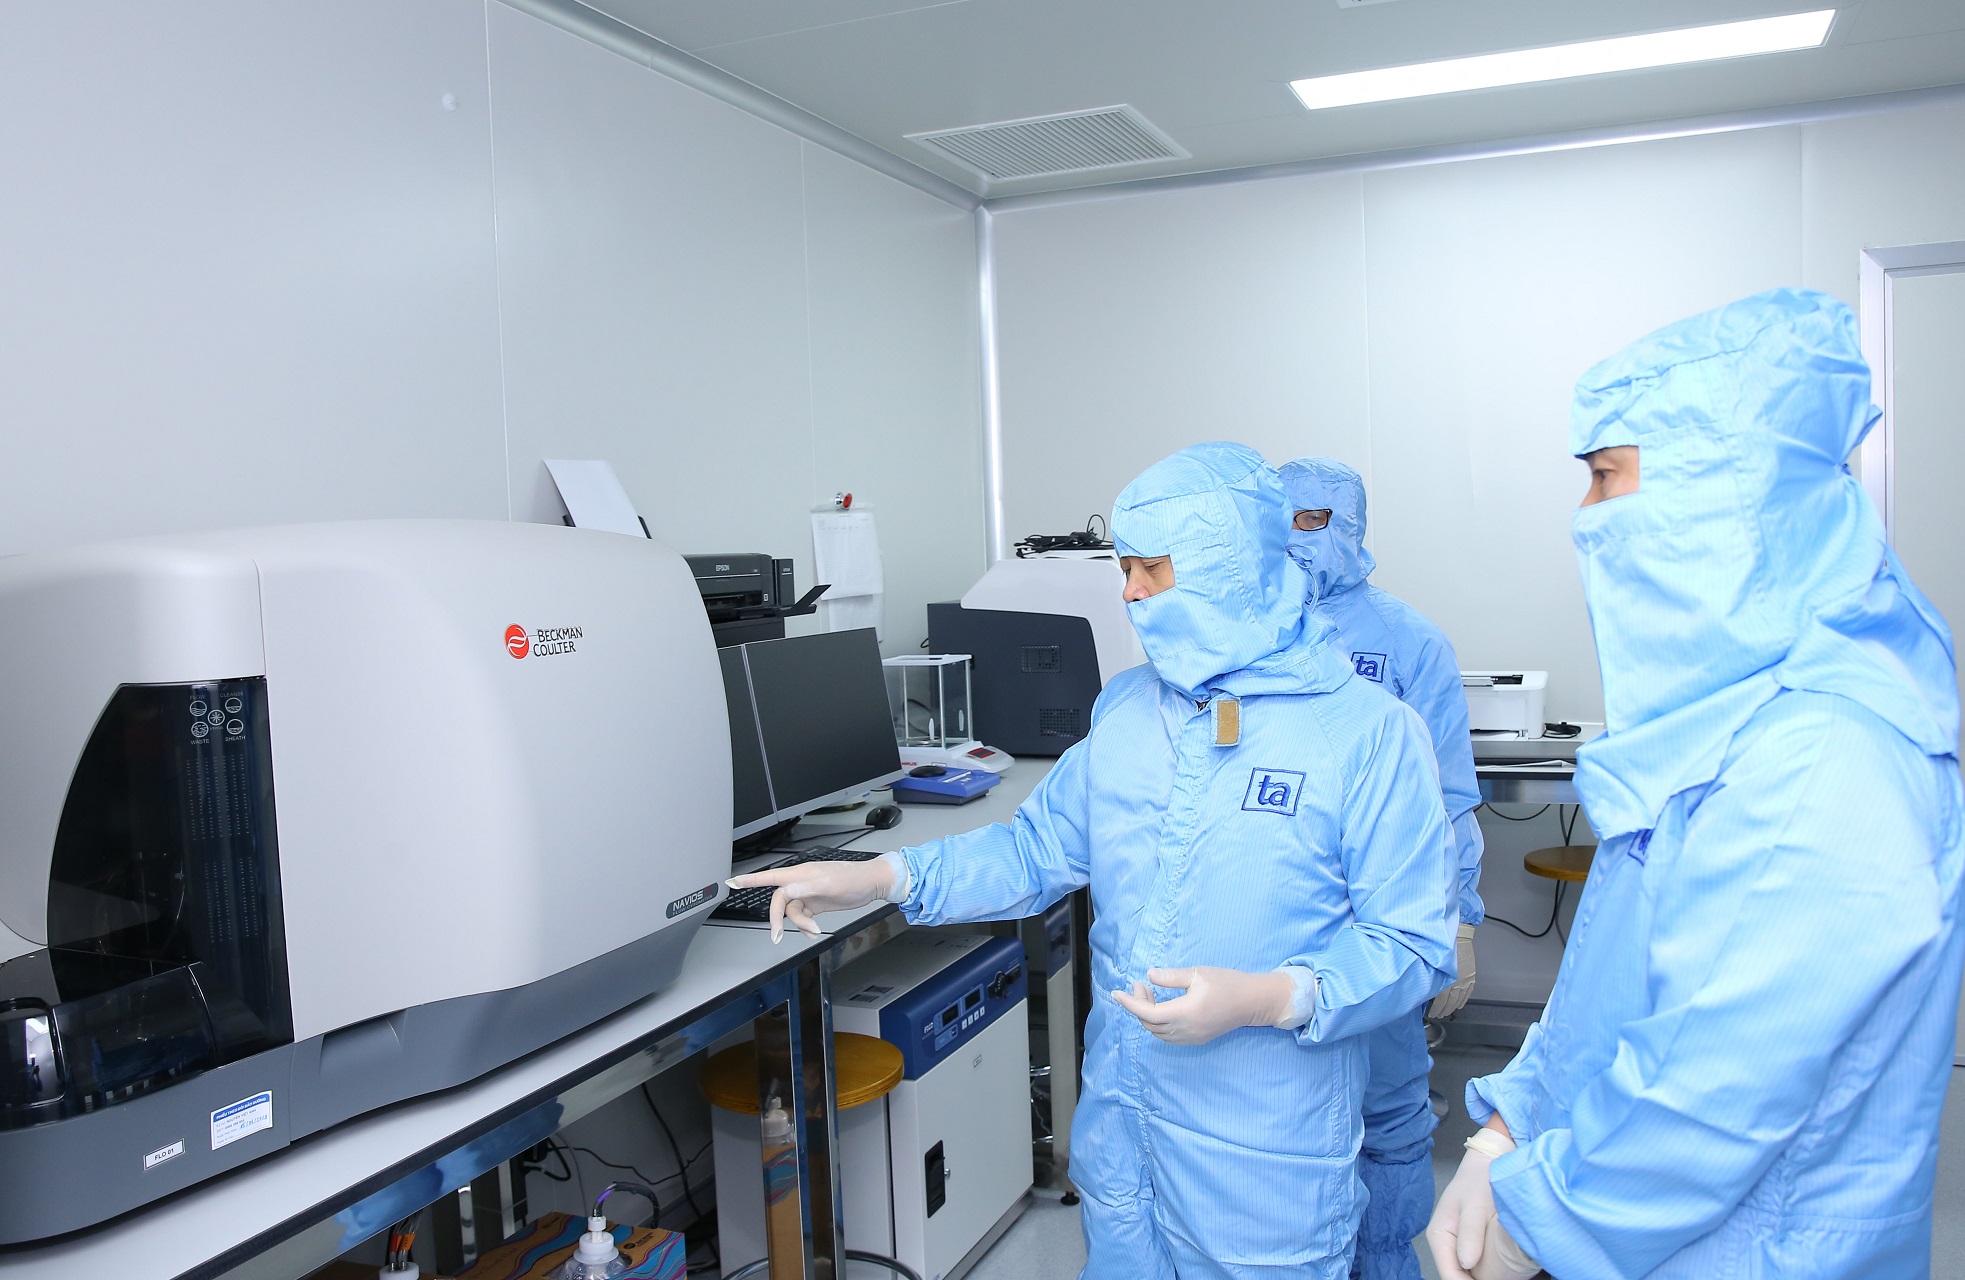 Hệ thống thiết bị máy móc hiện đại tại Trung tâm Tế Bào Gốc BVĐK Tâm Anh giúp thực hiện việc sản xuất huyết tương giàu tiểu cầu tự thân cho chất lượng tốt nhất, giúp mang lại hiệu quả và sự an toàn cao khi sử dụng